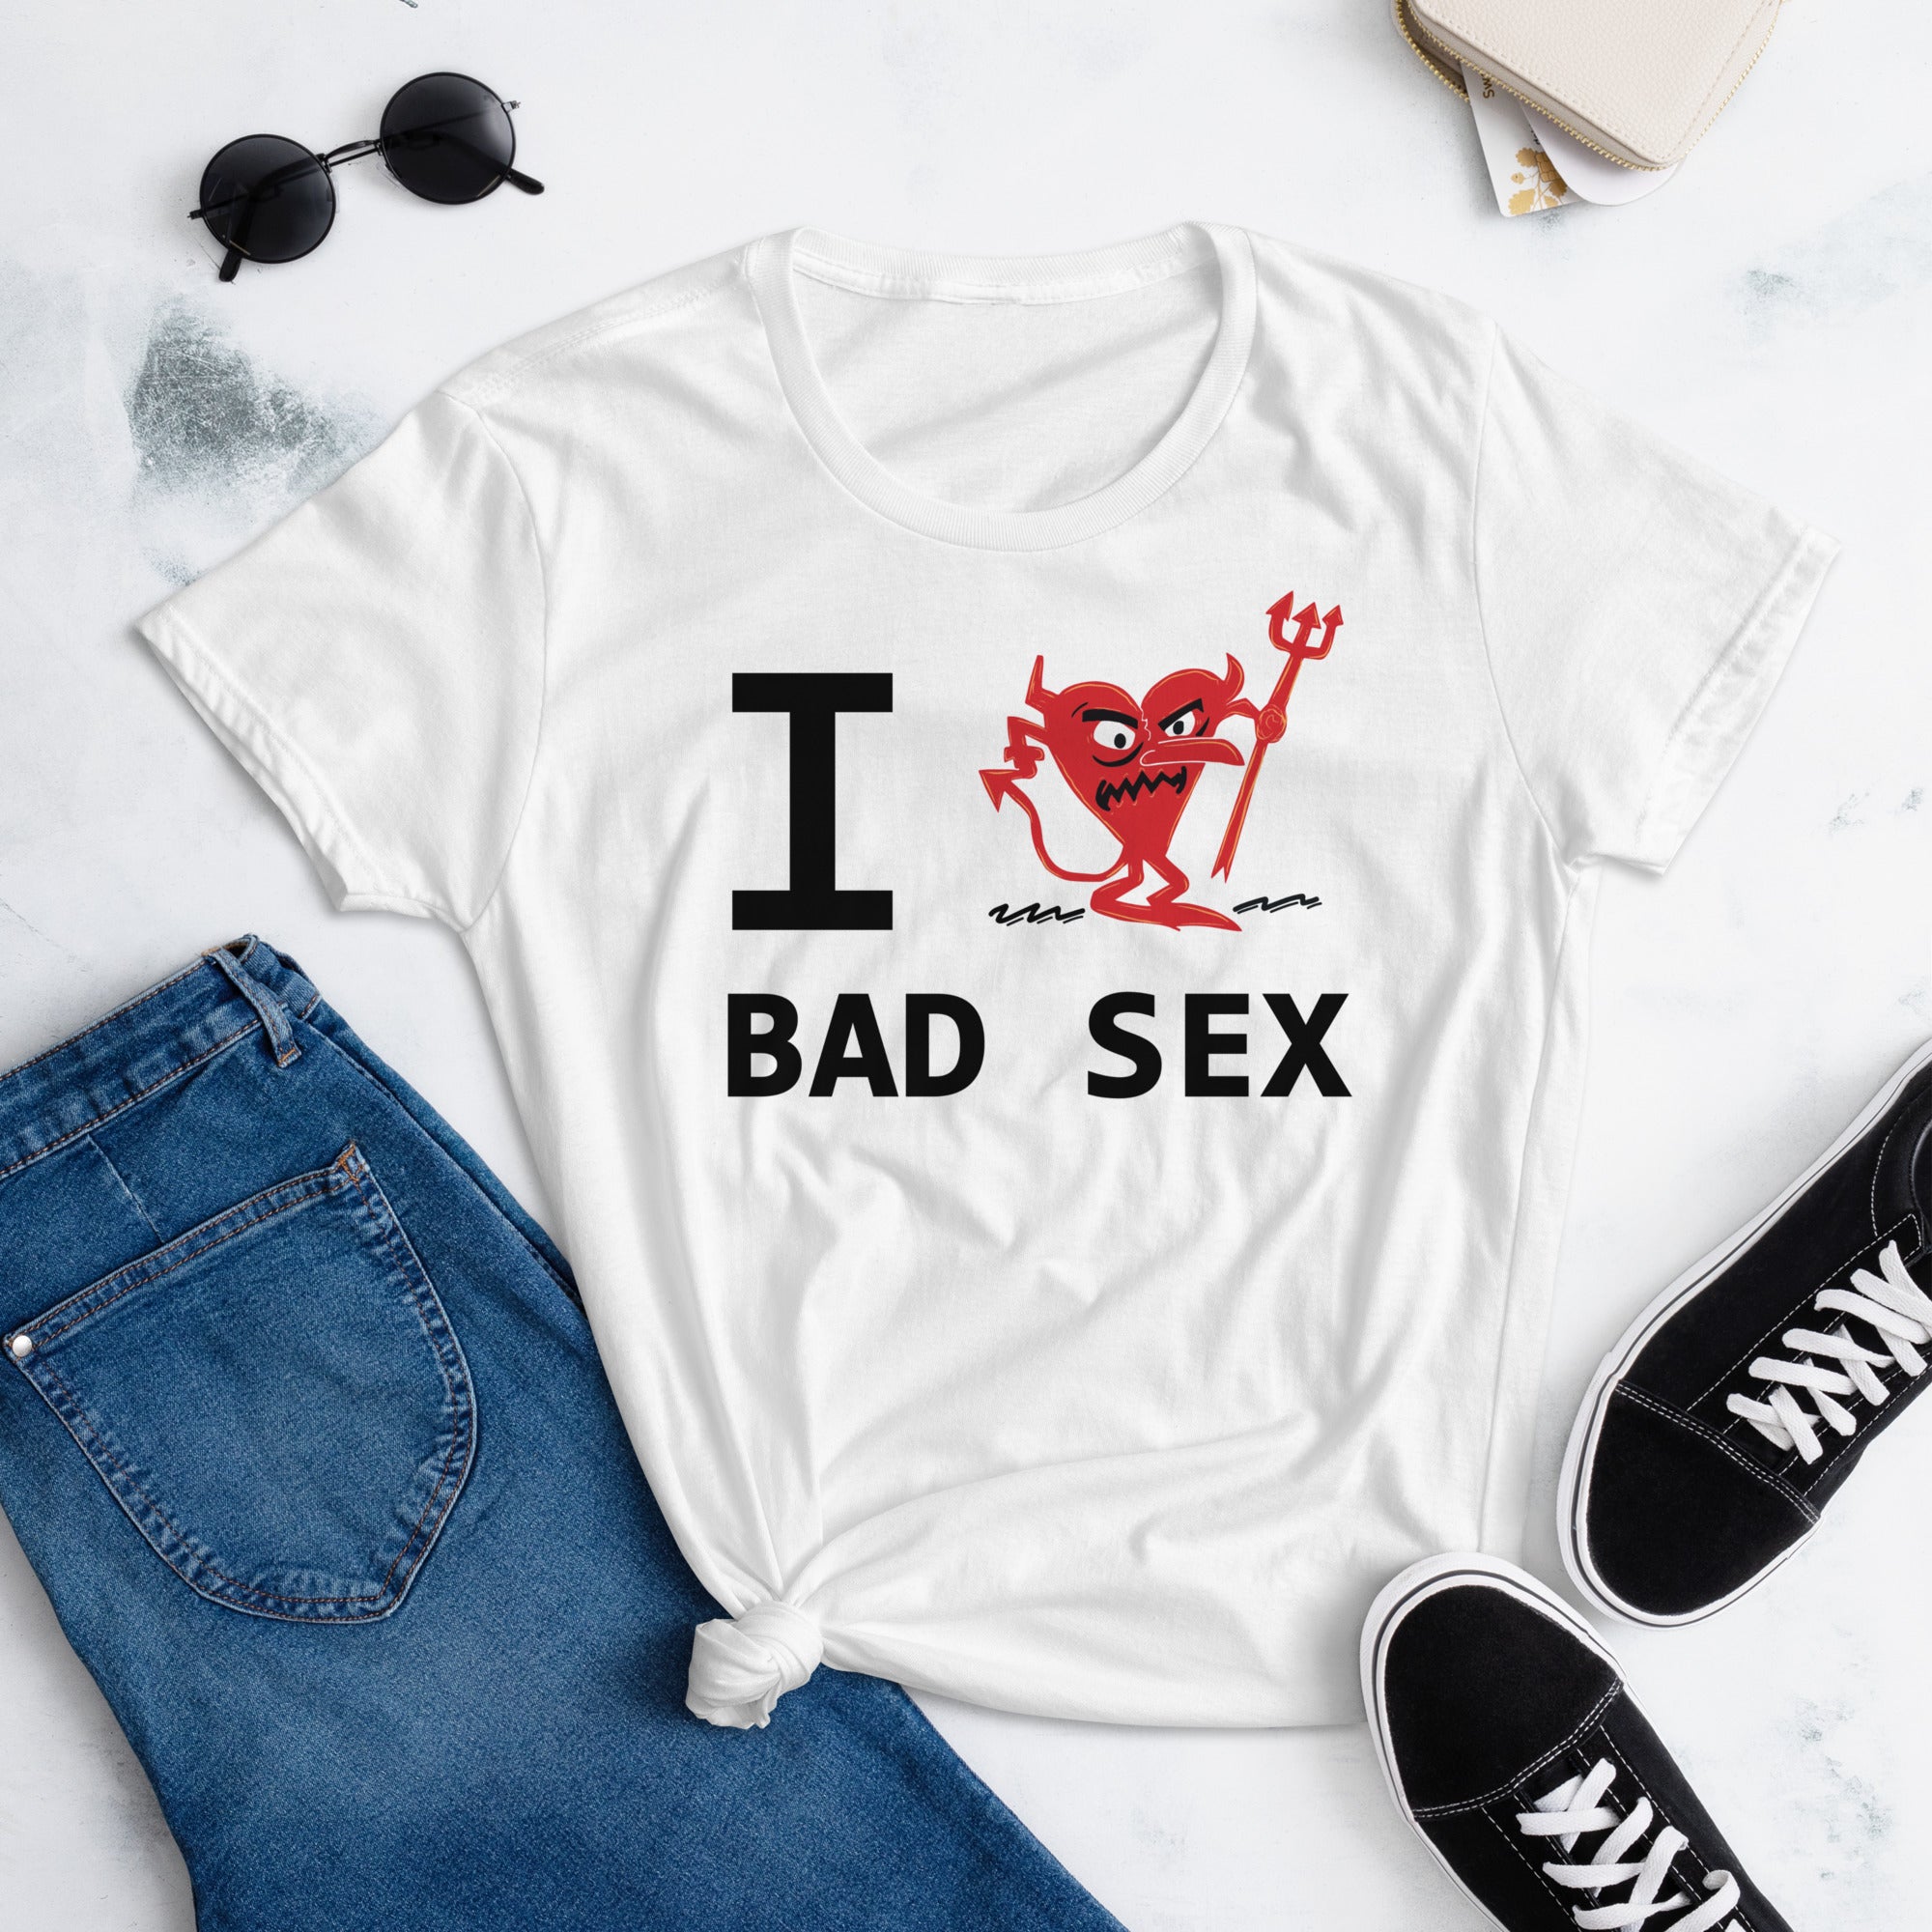 BAD SEX Women's short sleeve t-shirt